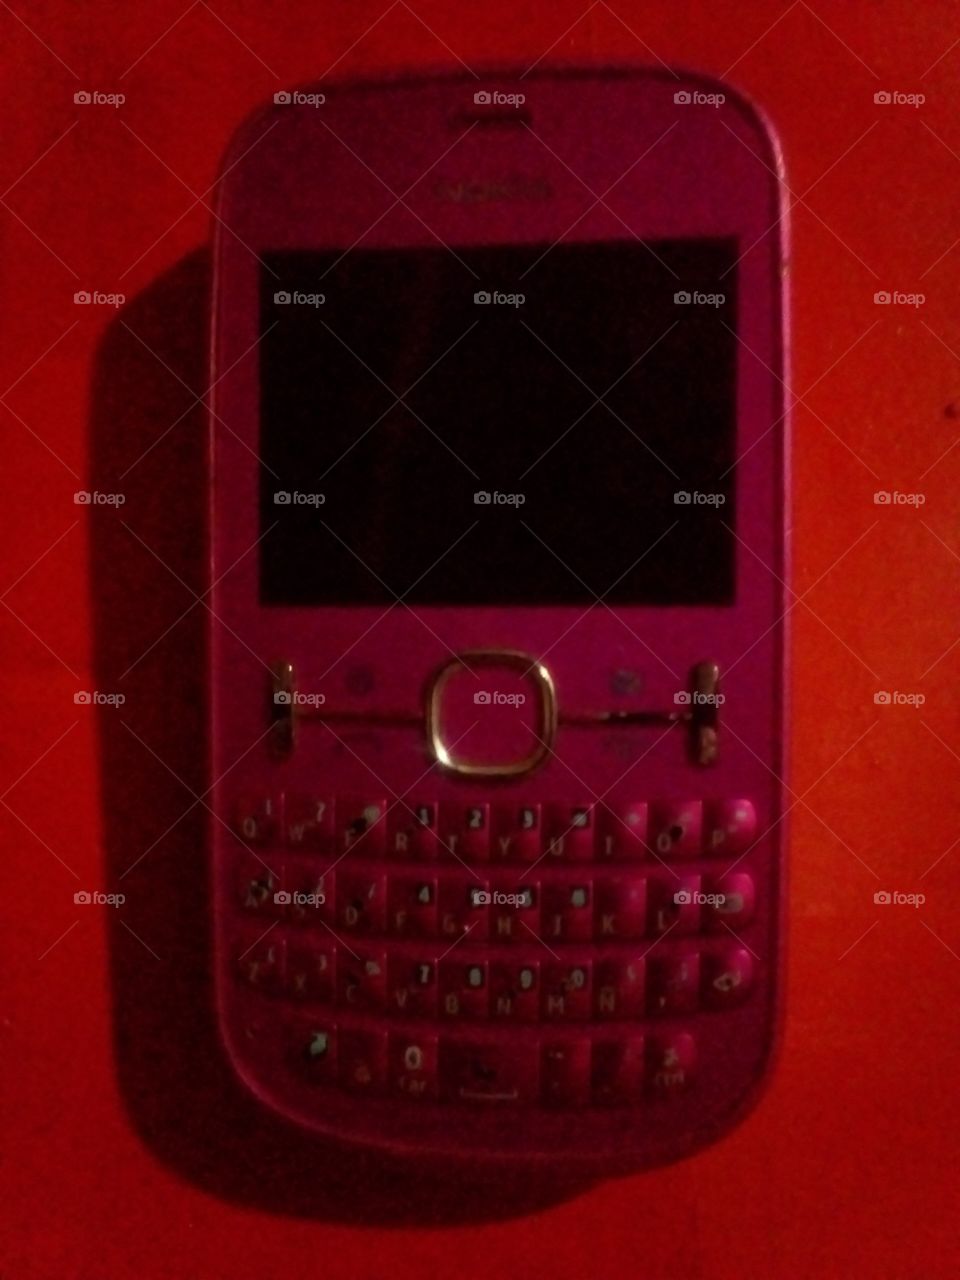 celular marca Nokia de color rosado